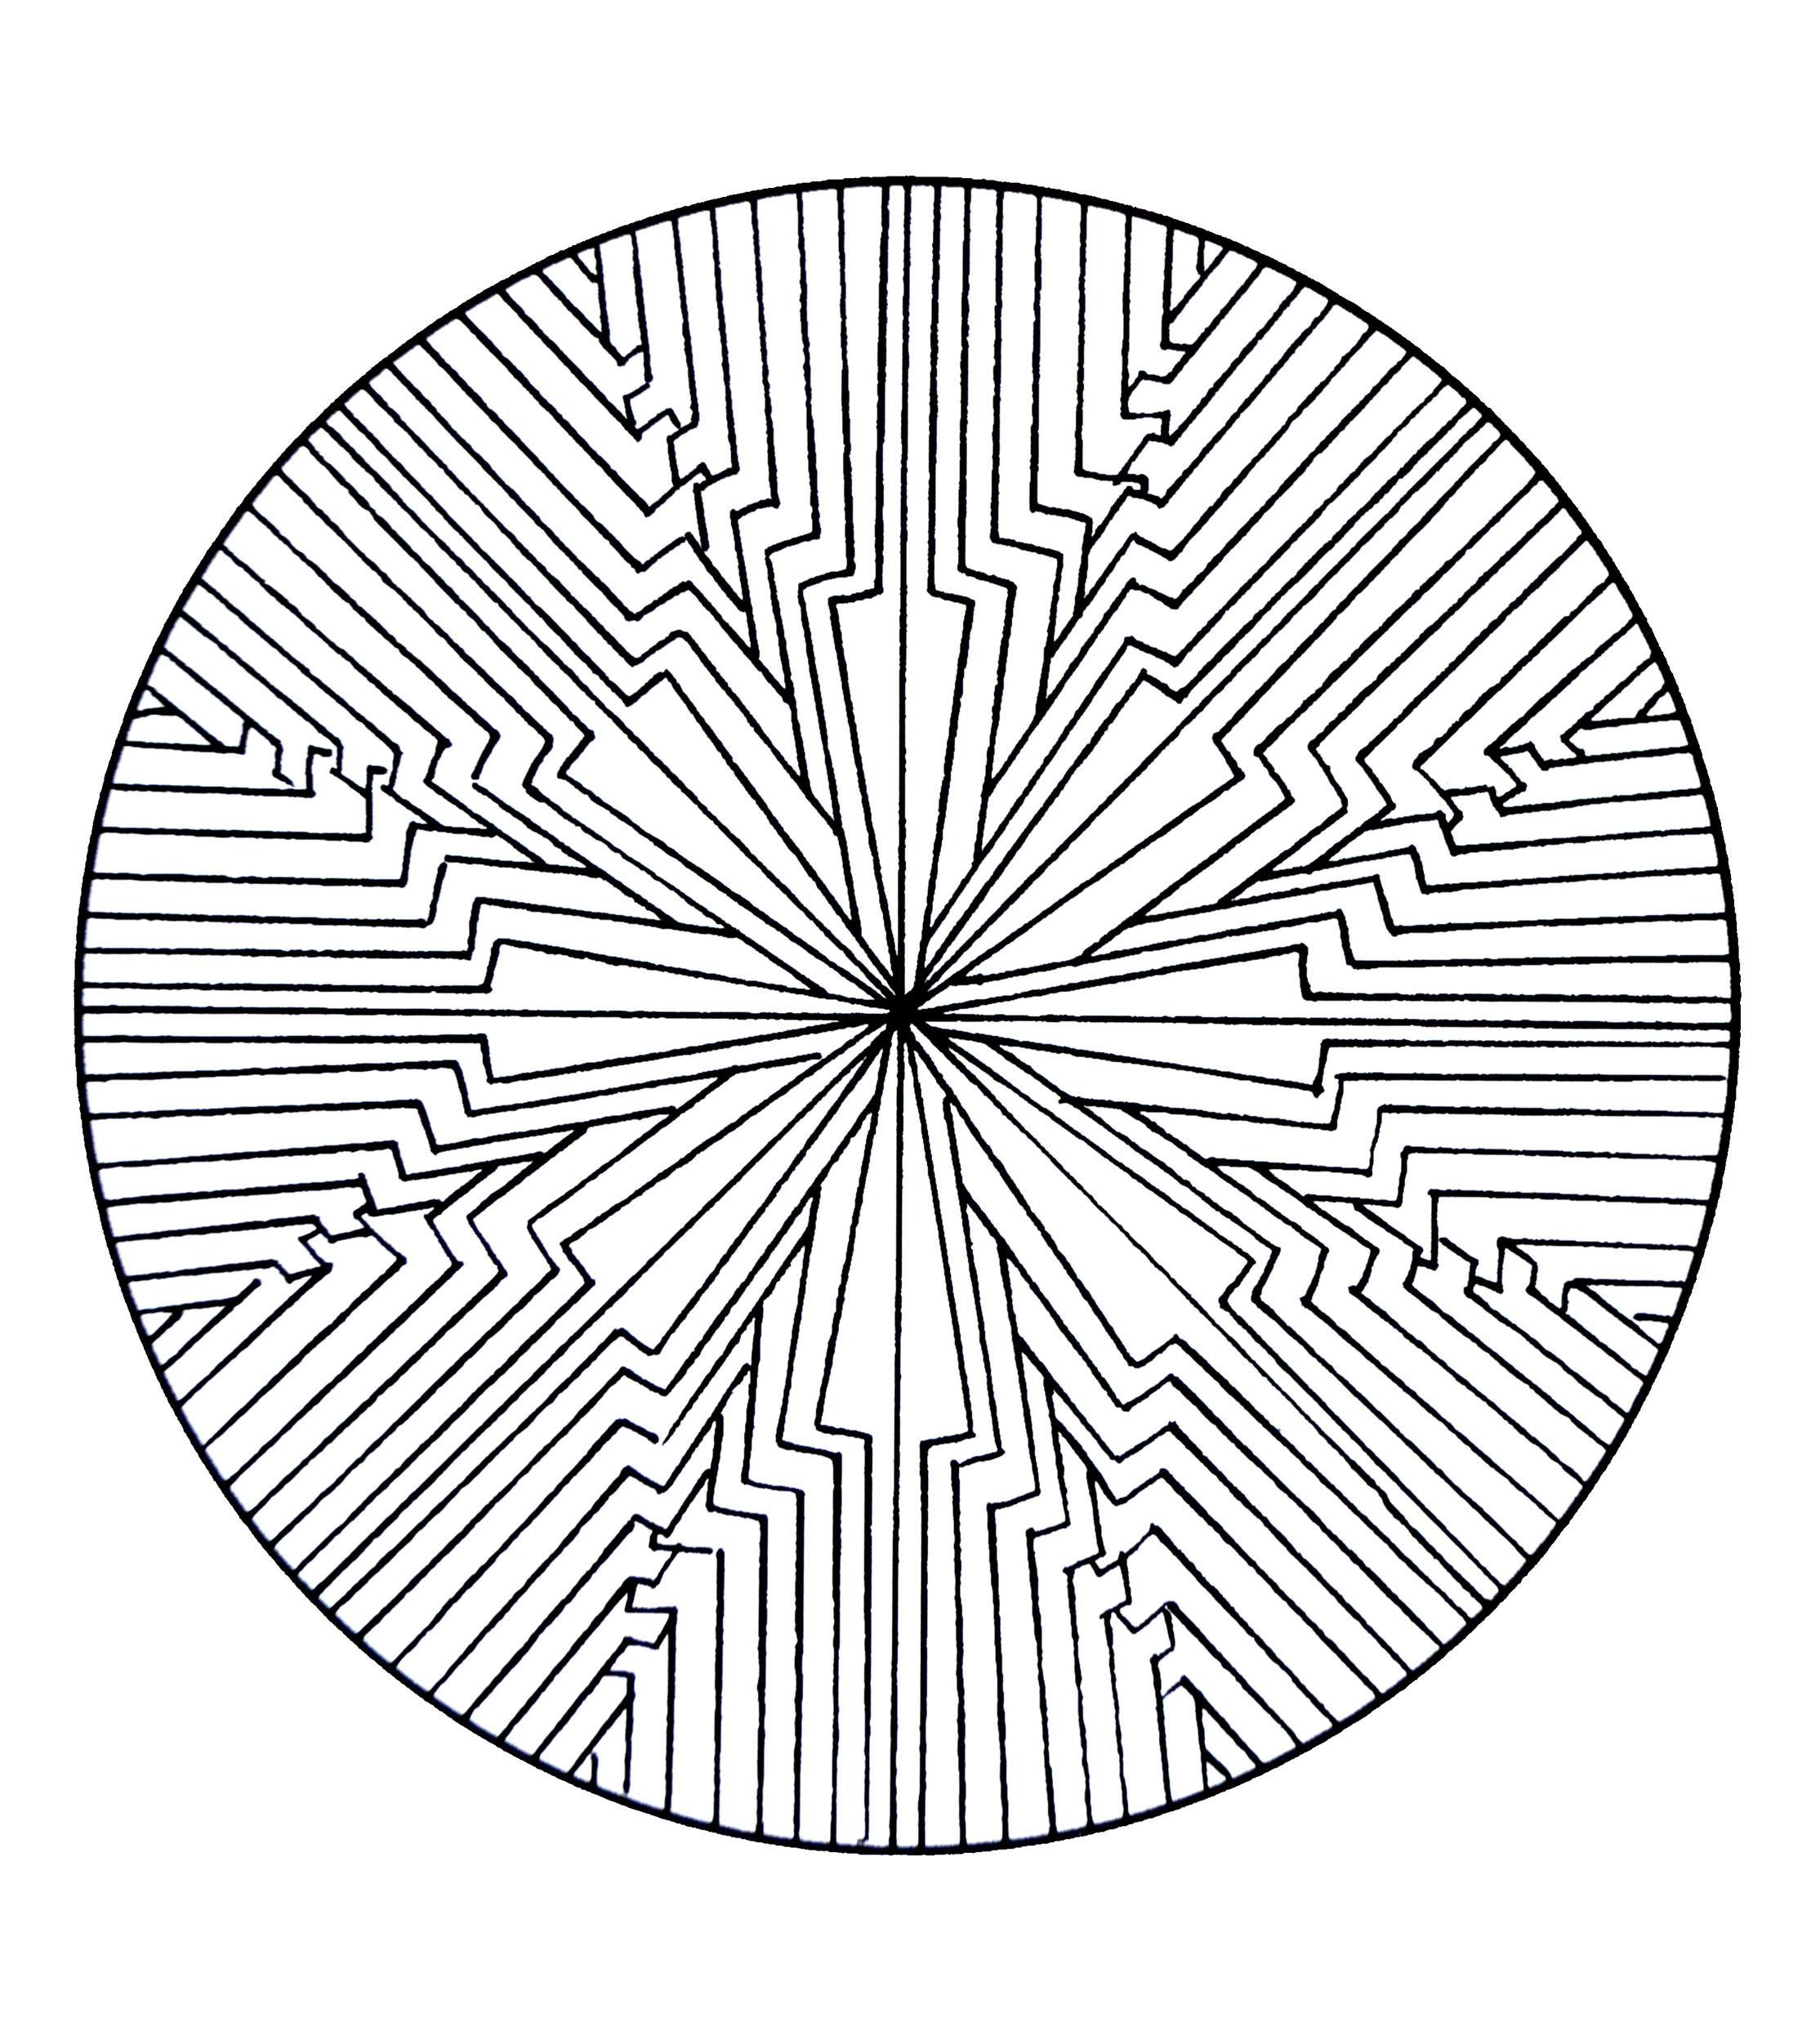 Mandala à colorier de forme géométrique représentant une fleur au centre. Assez simple à colorier.